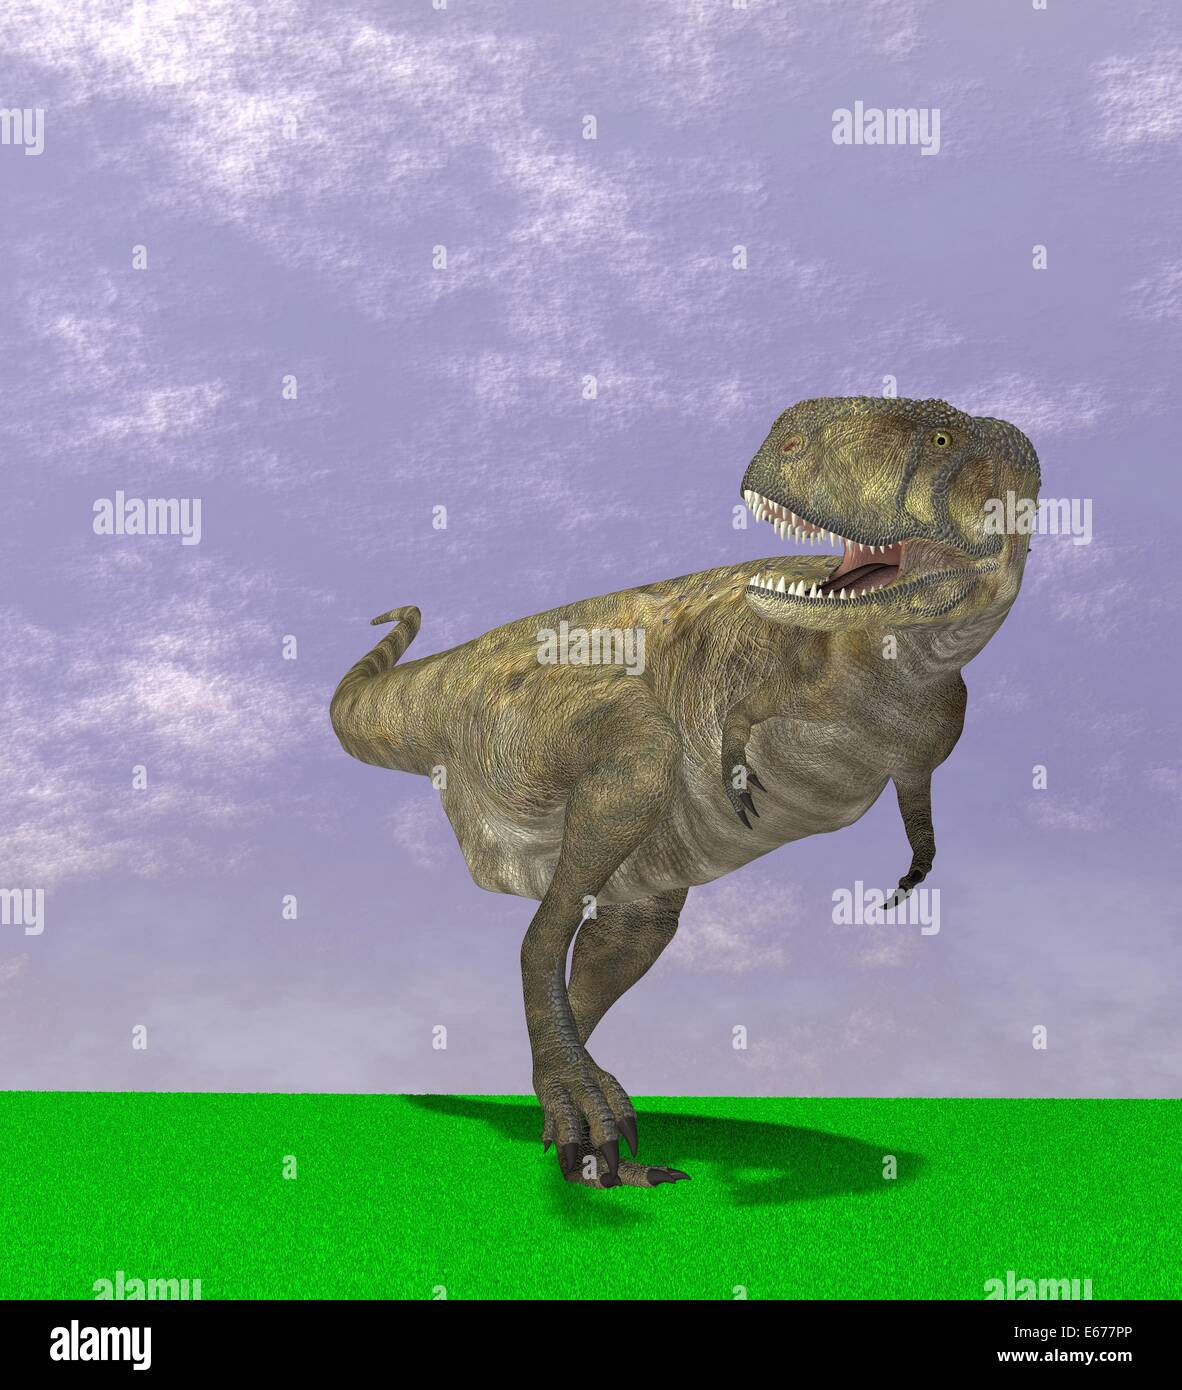 Dinosaurier Abelisaurus / dinosaur Abelisaurus Stock Photo